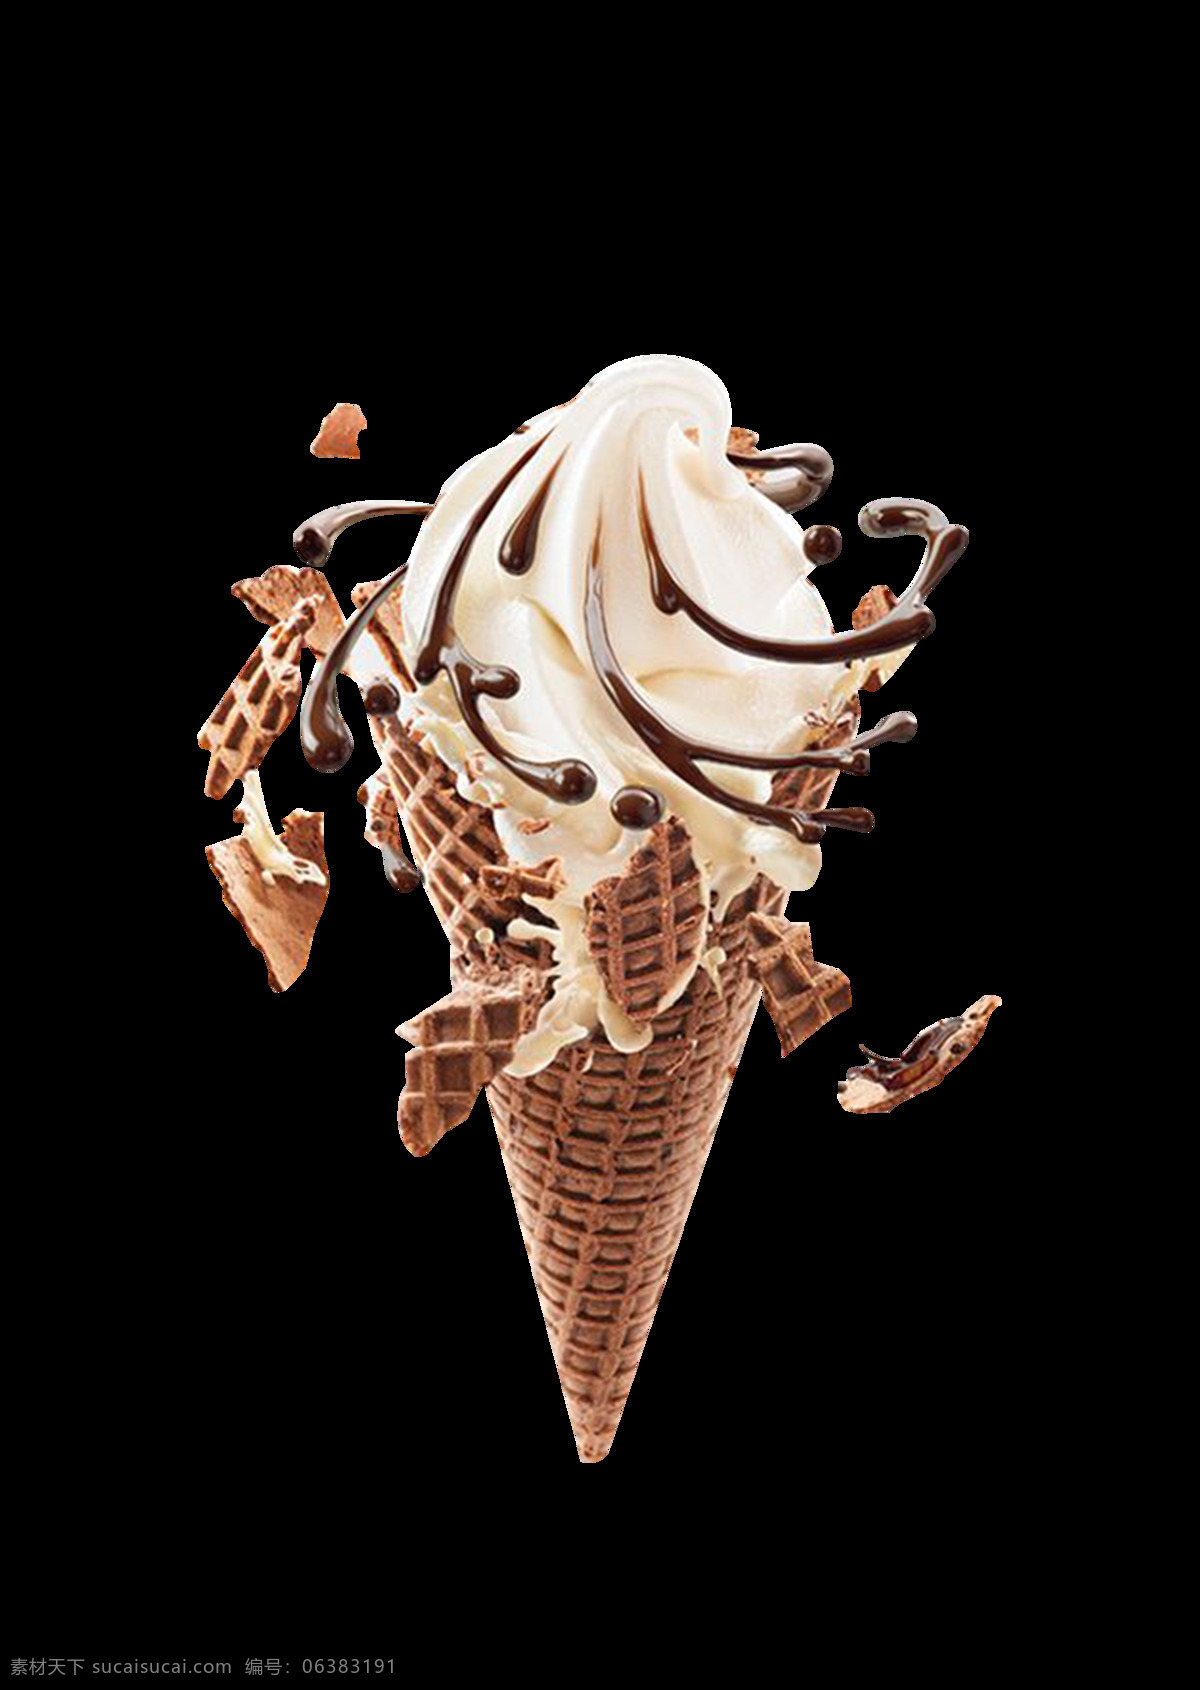 旋转 融化 破碎 冰淇淋 透明 巧克力 雪糕 棕色 甜食 透明素材 免扣素材 装饰图片